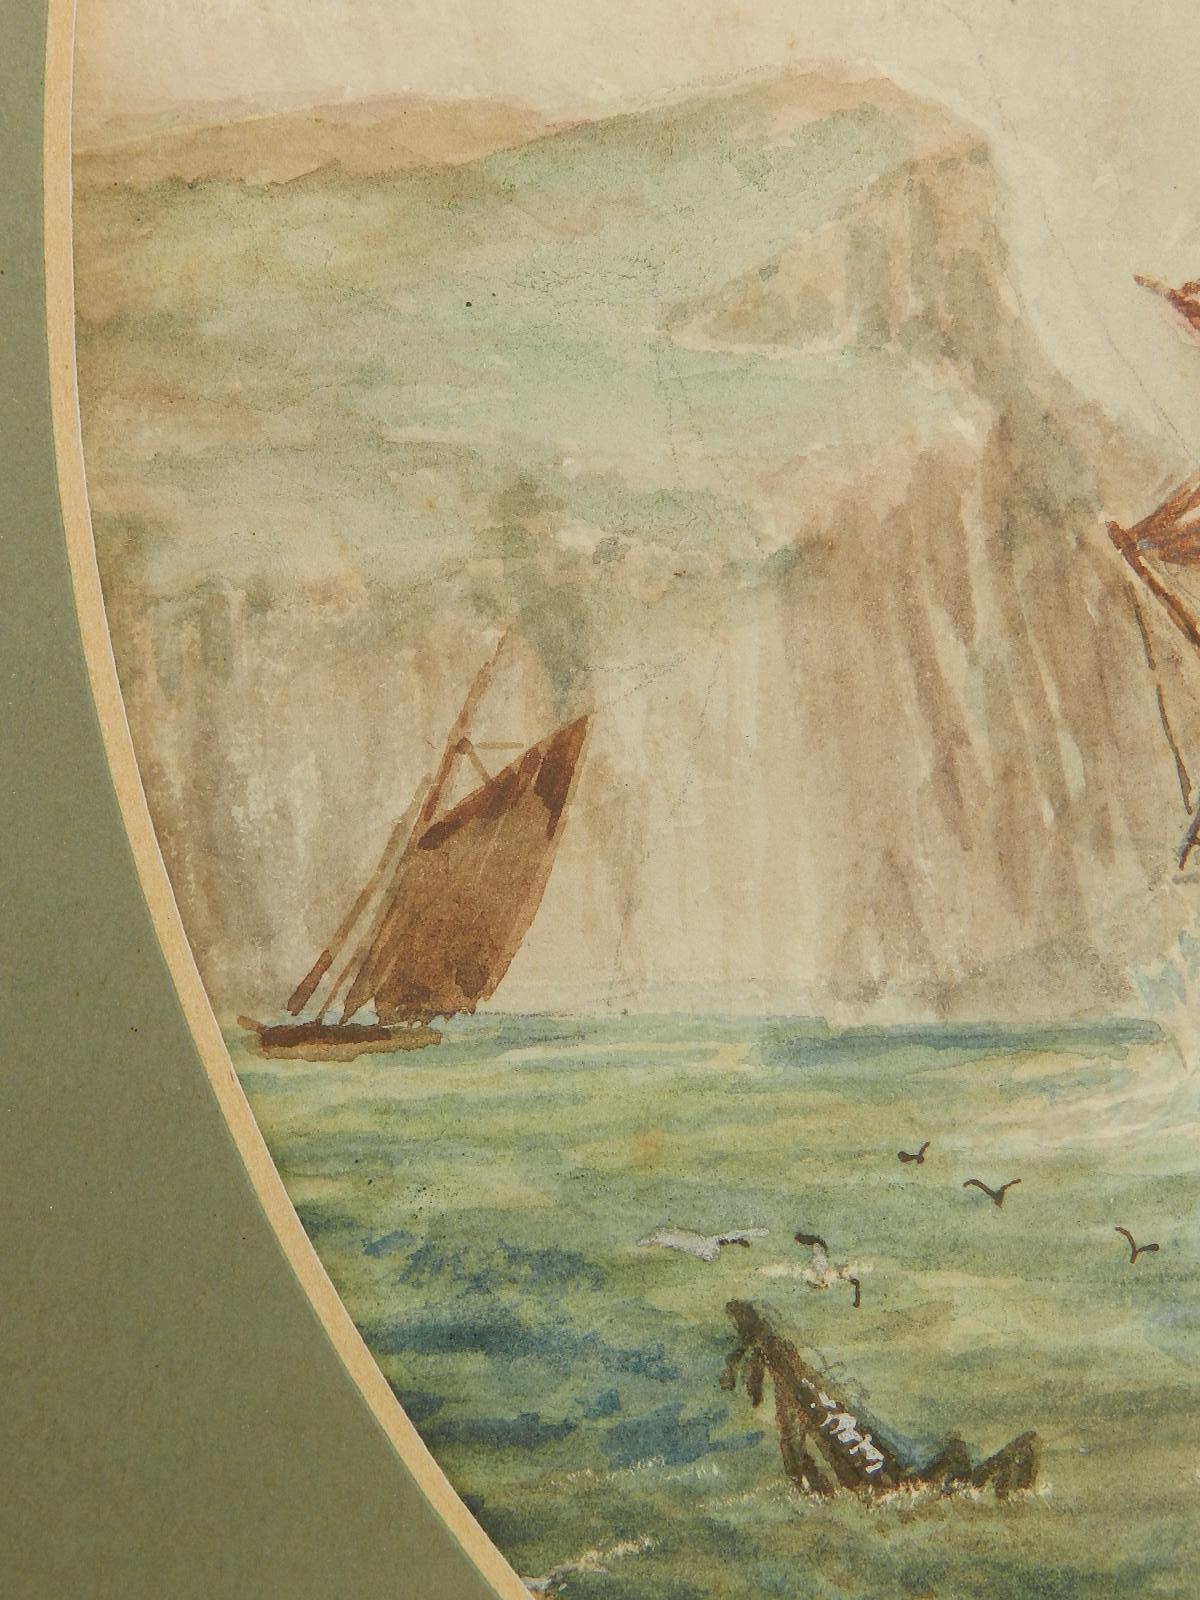 19th century sailing ships